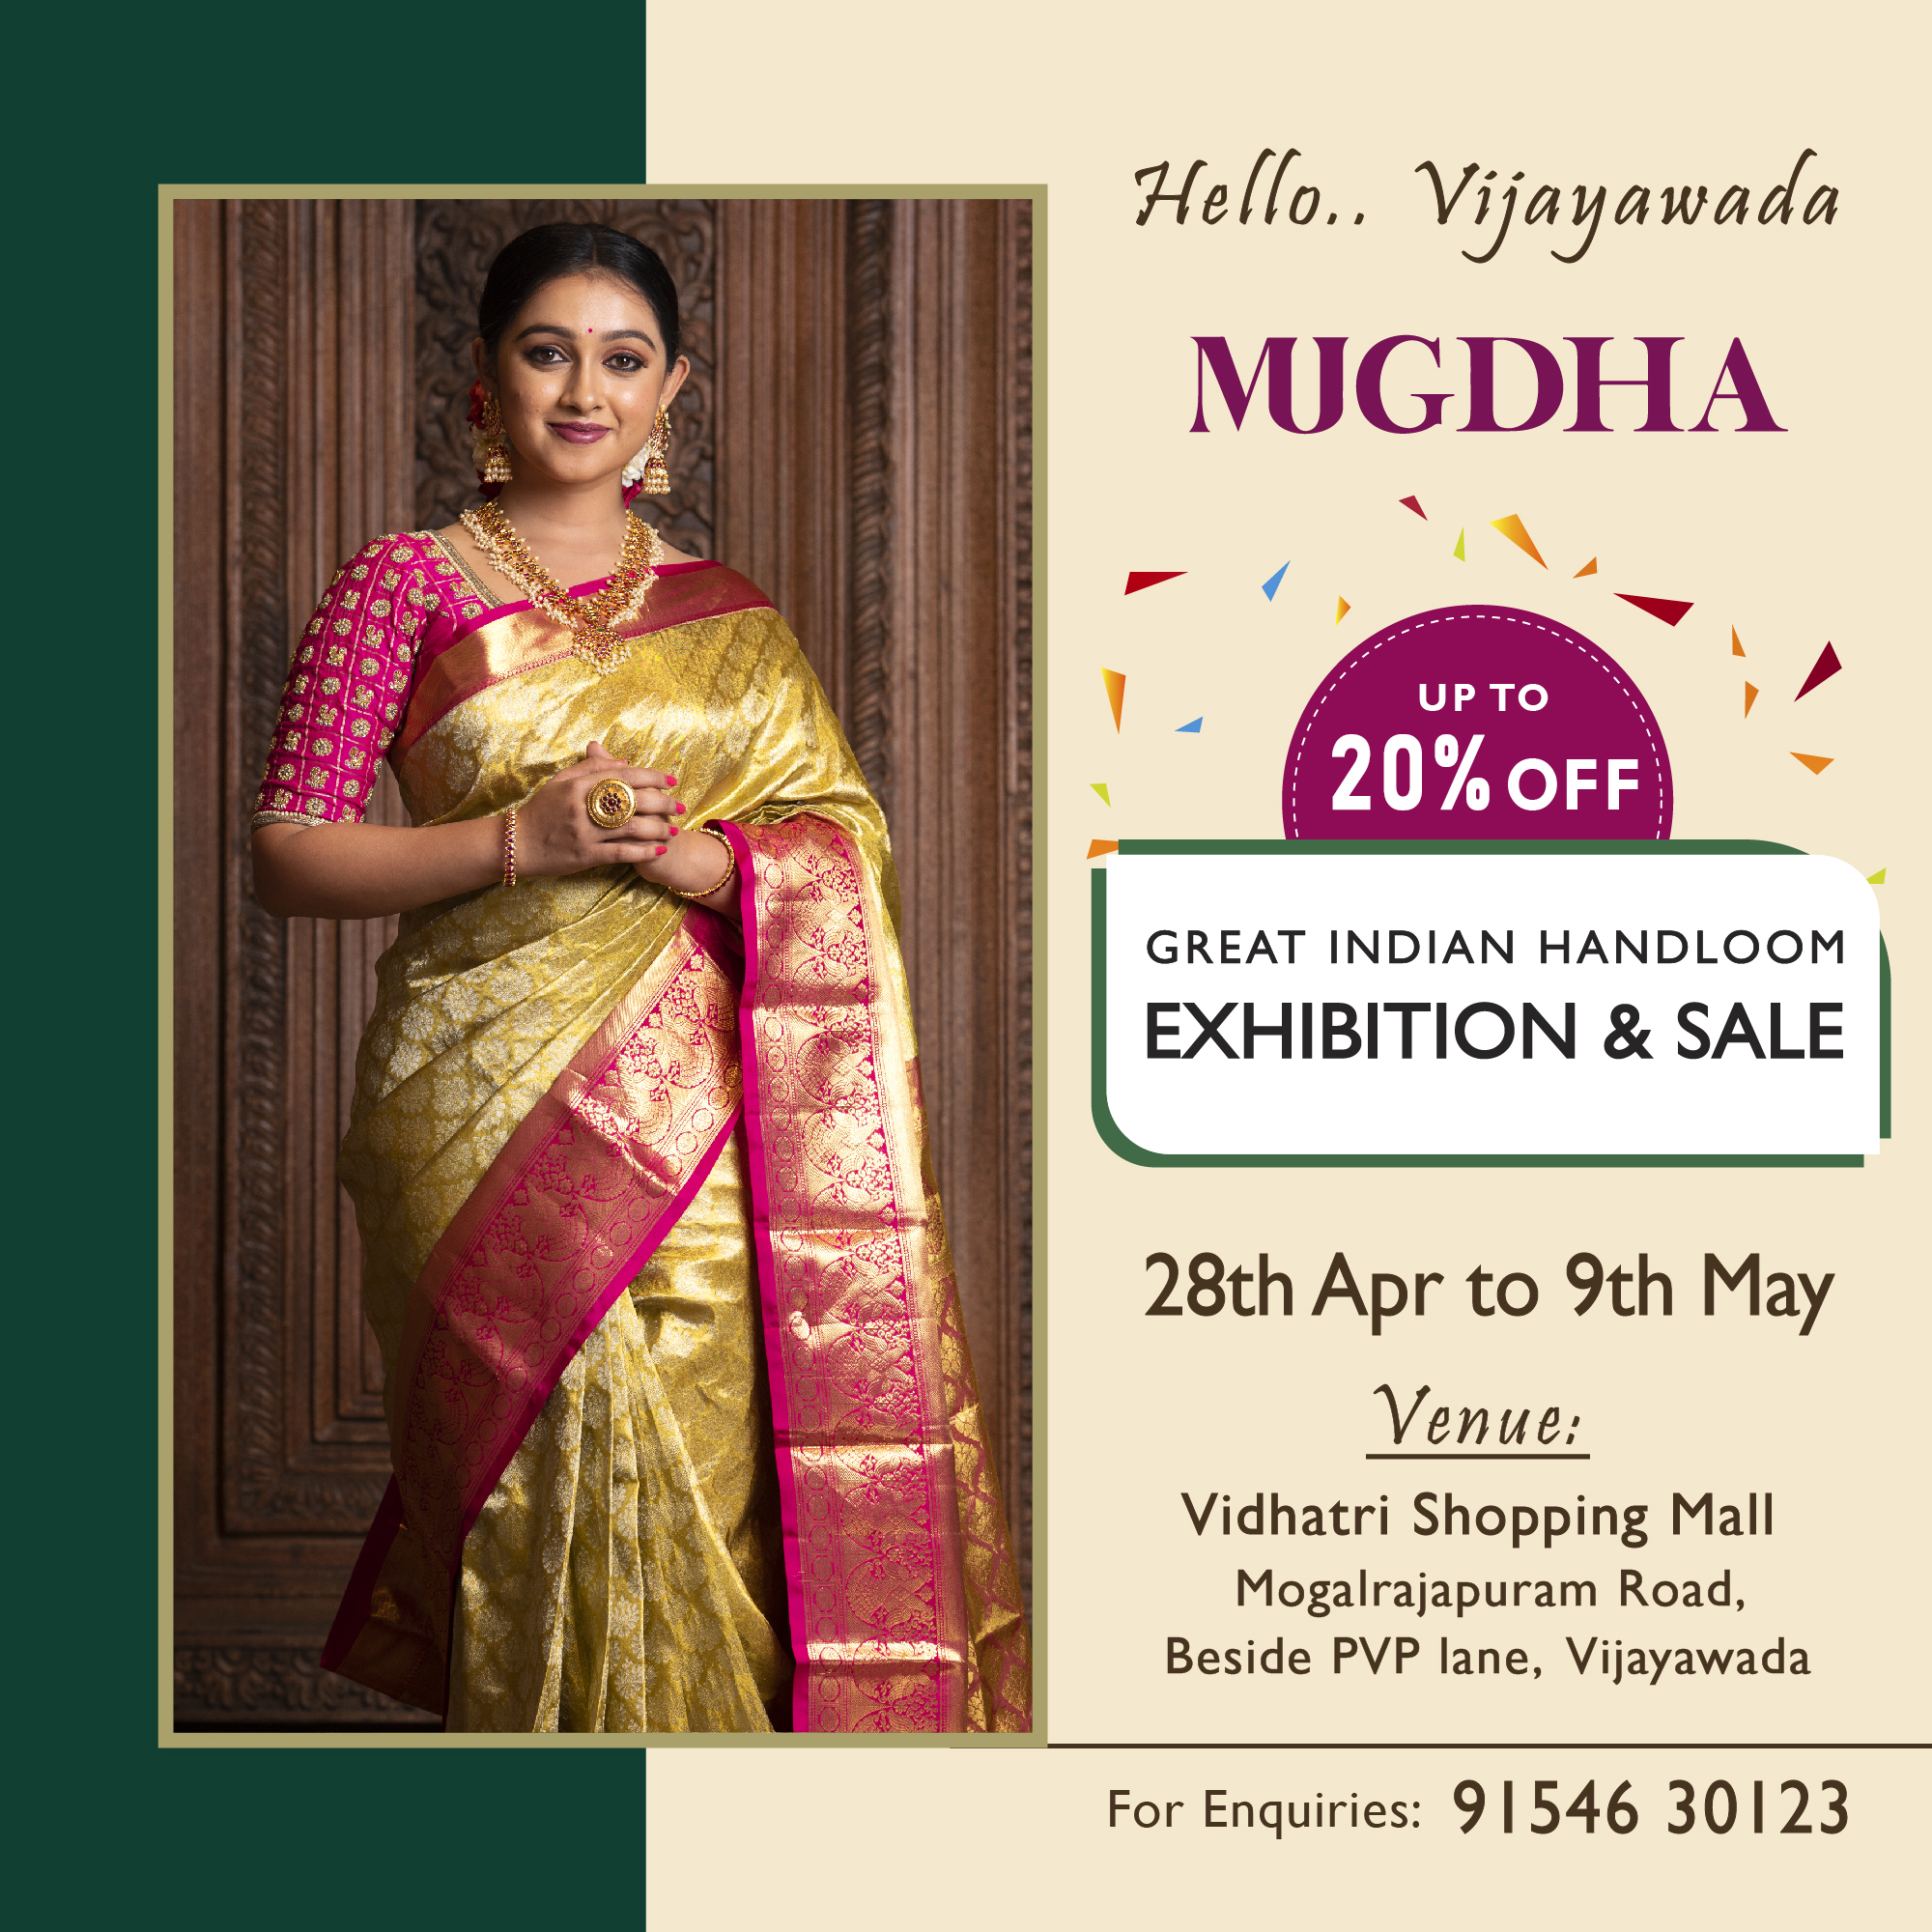 The Great Indian Handloom Exhibition & Sale From Mugdha is back at Vijayawada, Vizianagaram, Andhra Pradesh, India